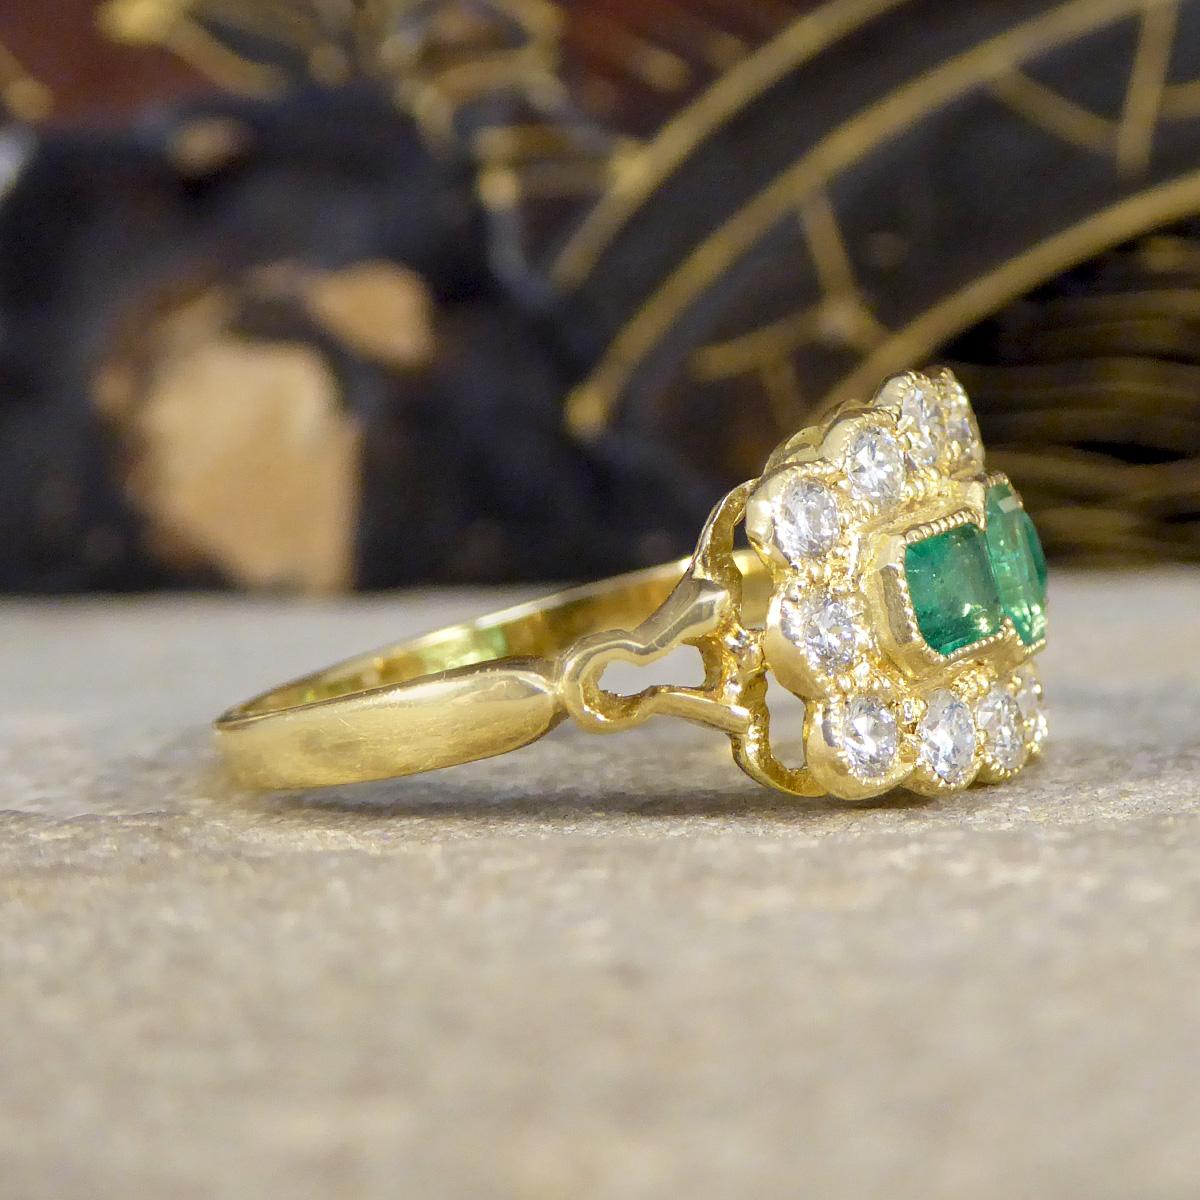 Eine schöne antike Stil Smaragd und Diamant Boot Ring in 18ct Gelbgold. Es ist ein prächtiges Stück, das die Essenz von Vintage-Eleganz und zeitloser Raffinesse in einem neueren, zeitgenössischen Rahmen einfängt. Dieser mit viel Liebe zum Detail